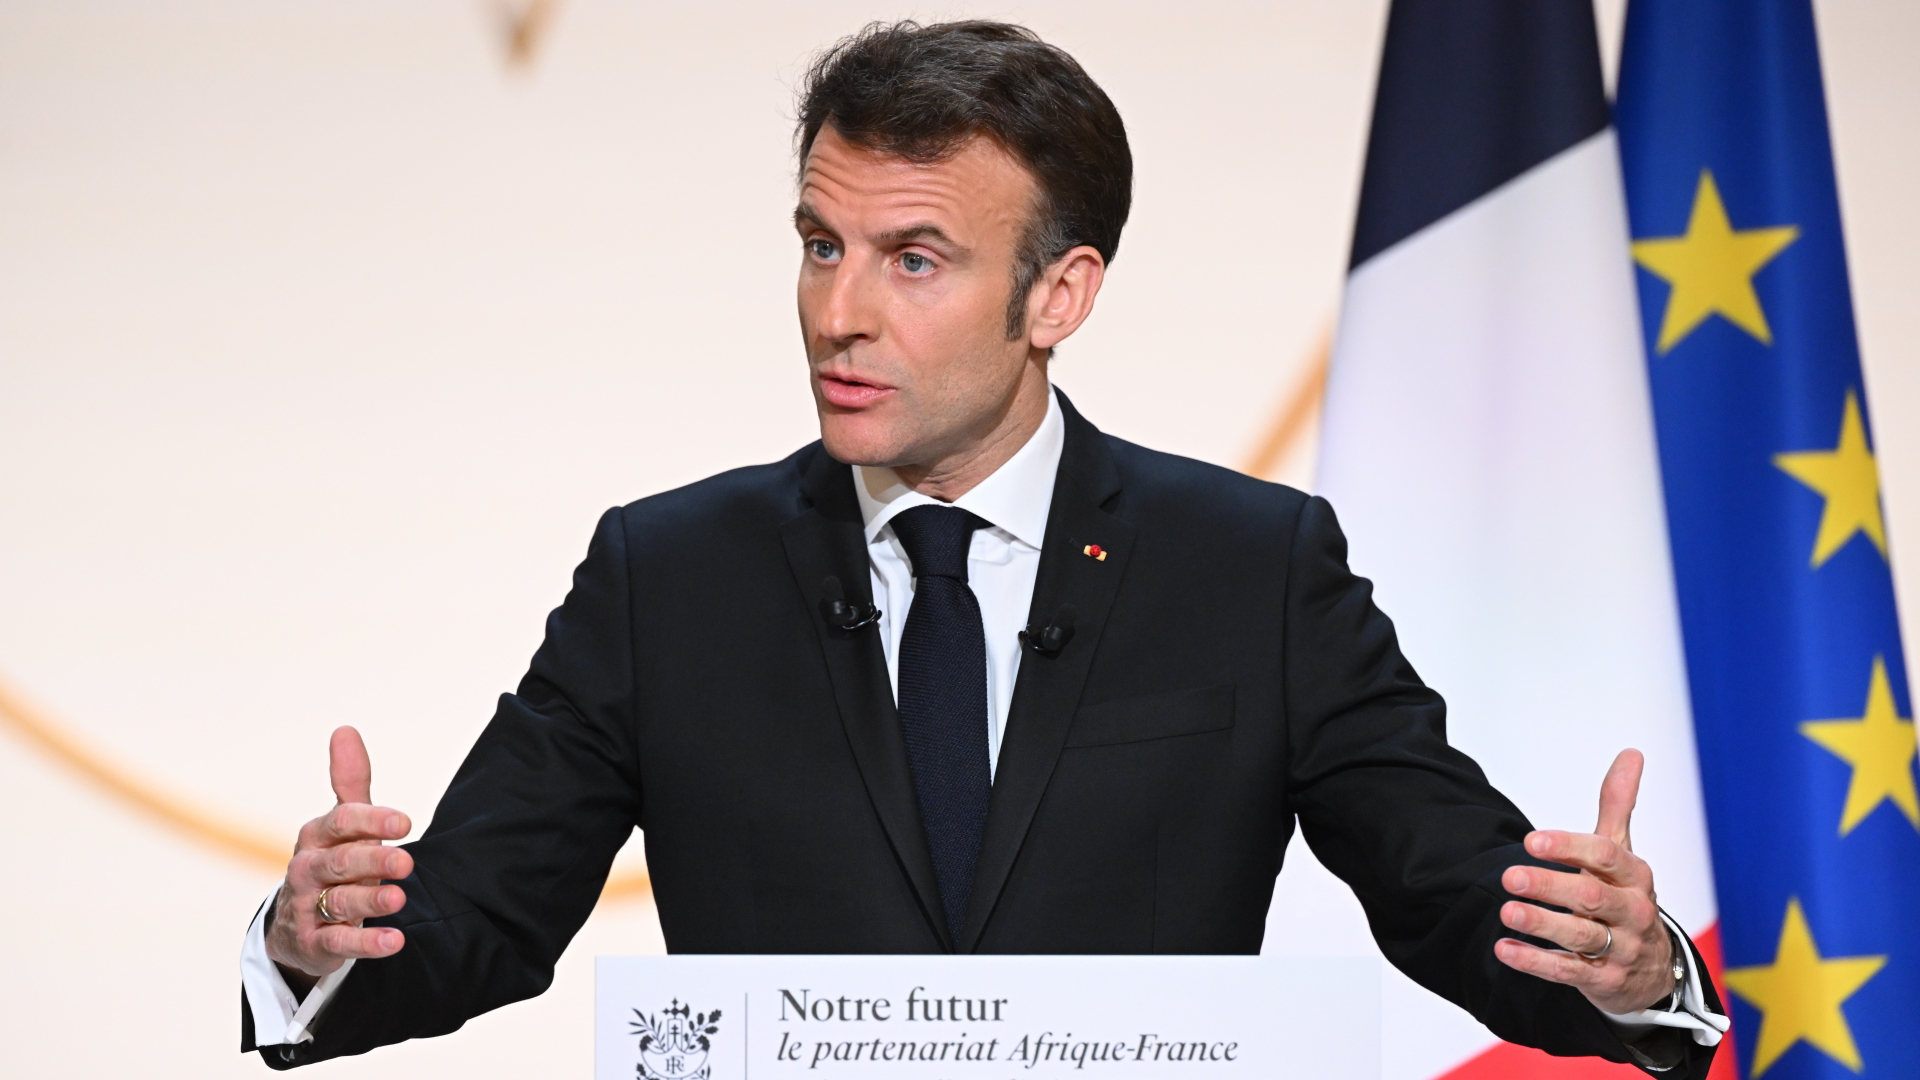 La France réduit la présence des troupes : Macron annonce un nouveau retrait militaire d’Afrique